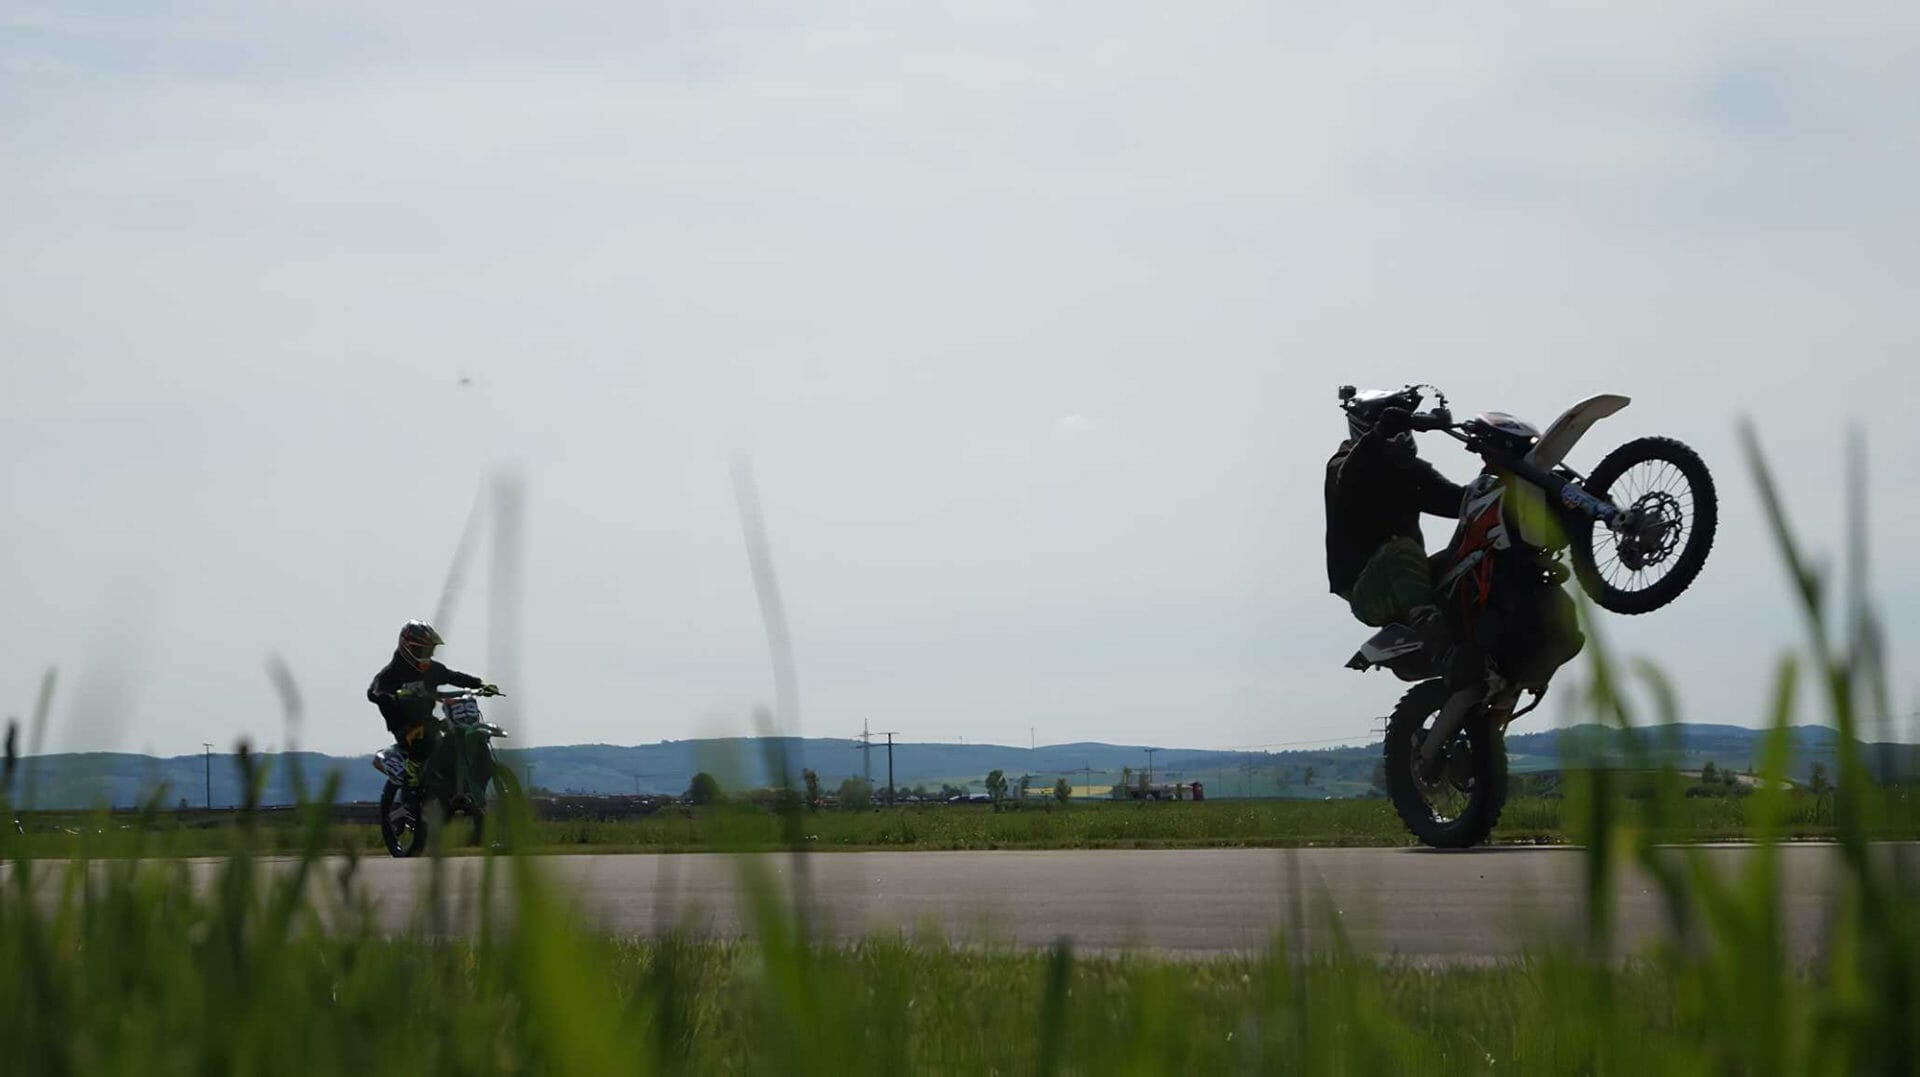 Polizei stoppt nicht angemeldete Motorrad-Veranstaltung - MOTORCYCLES.NEWS